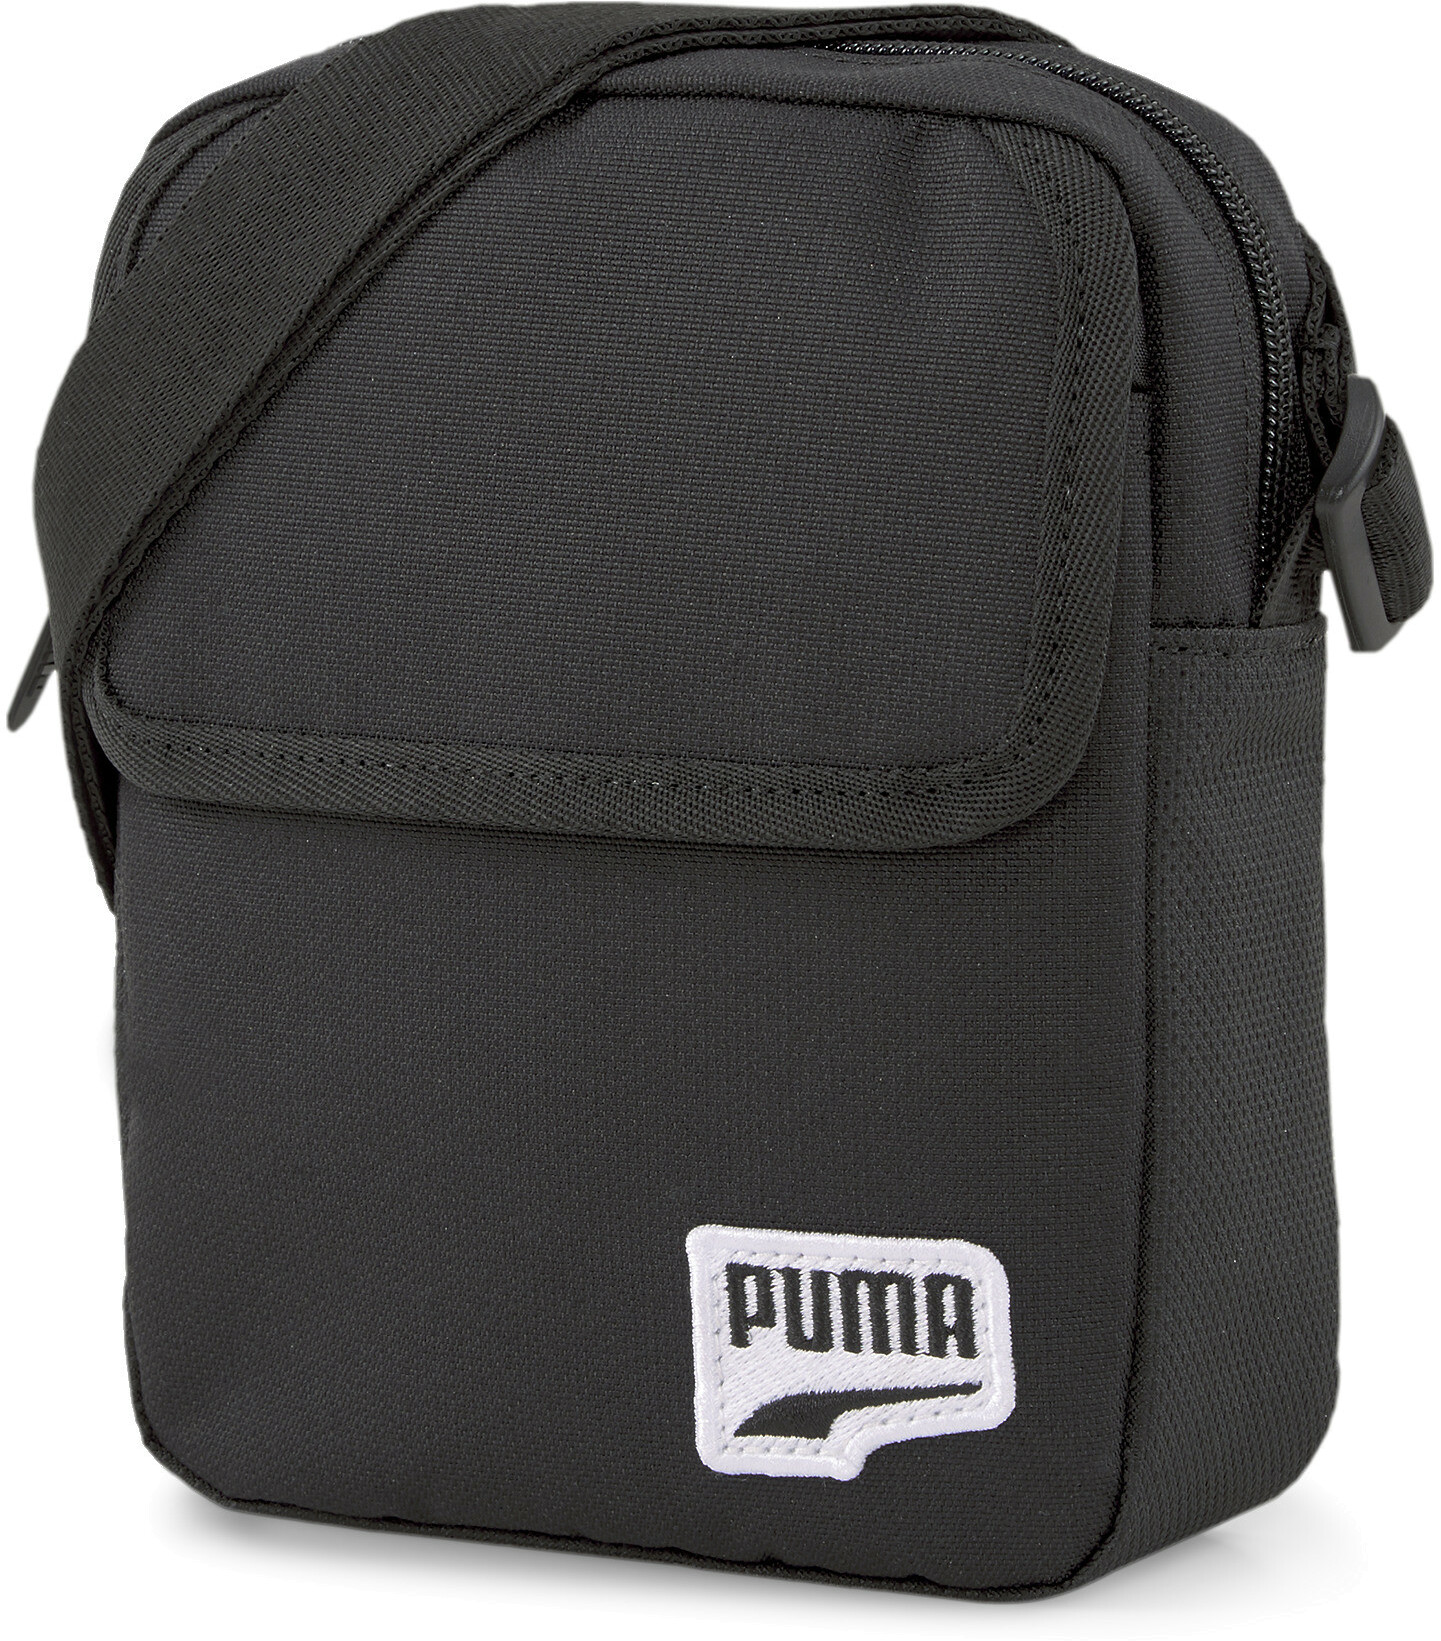 фото Сумка puma originals futro compact portable 7882201 цв.черный р.x